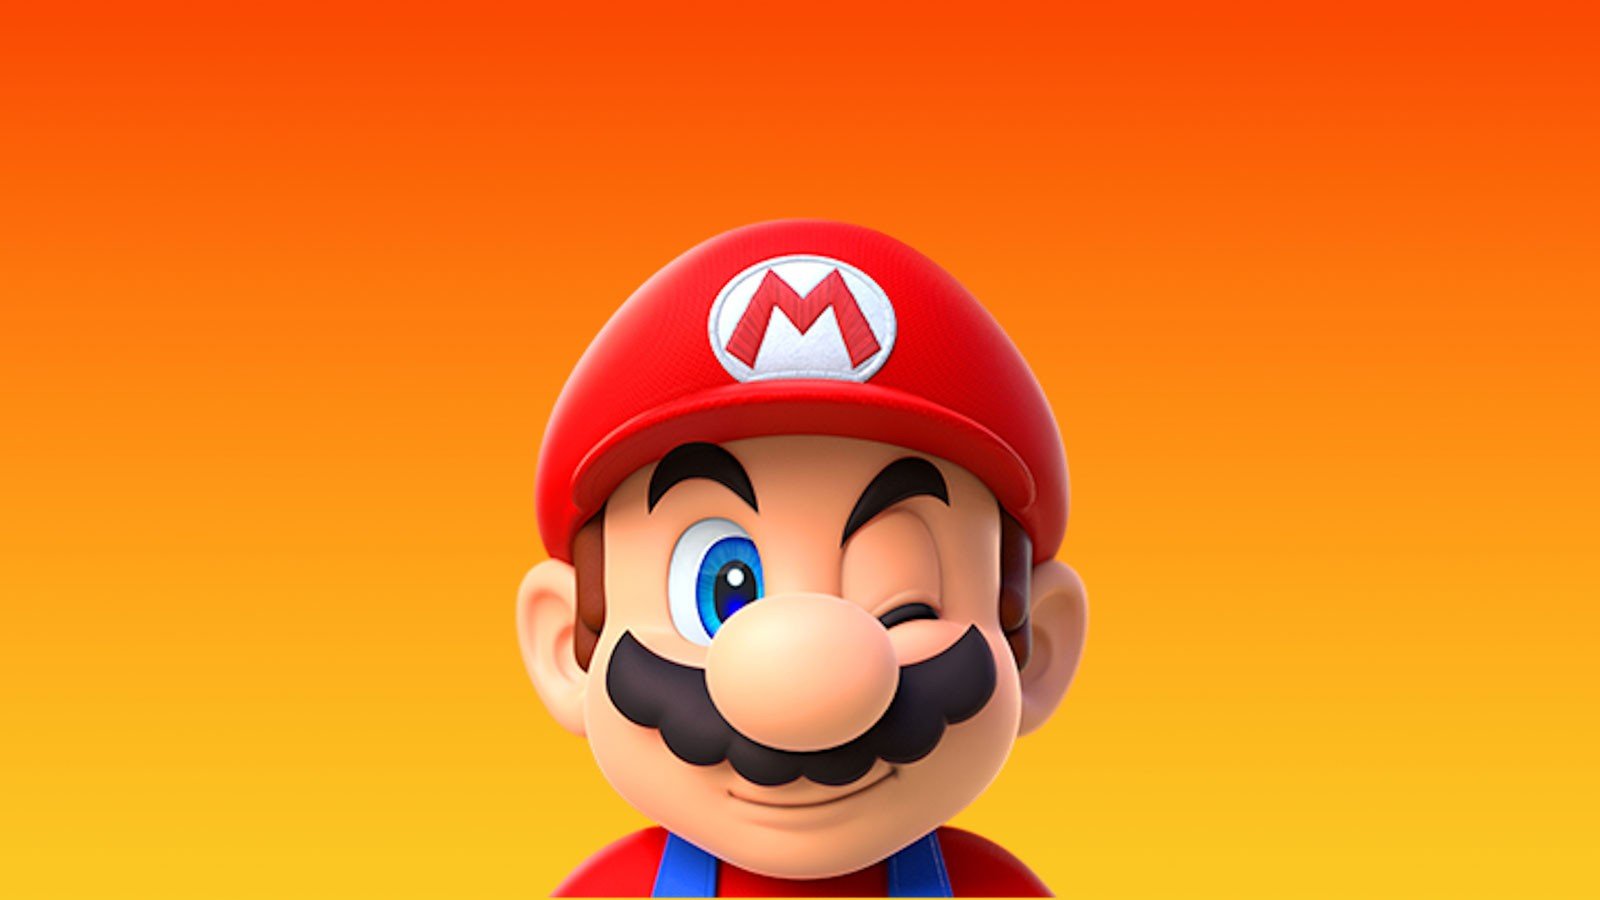 Vendas dos jogos do Mario dispararam após lançamento do filme - Adrenaline